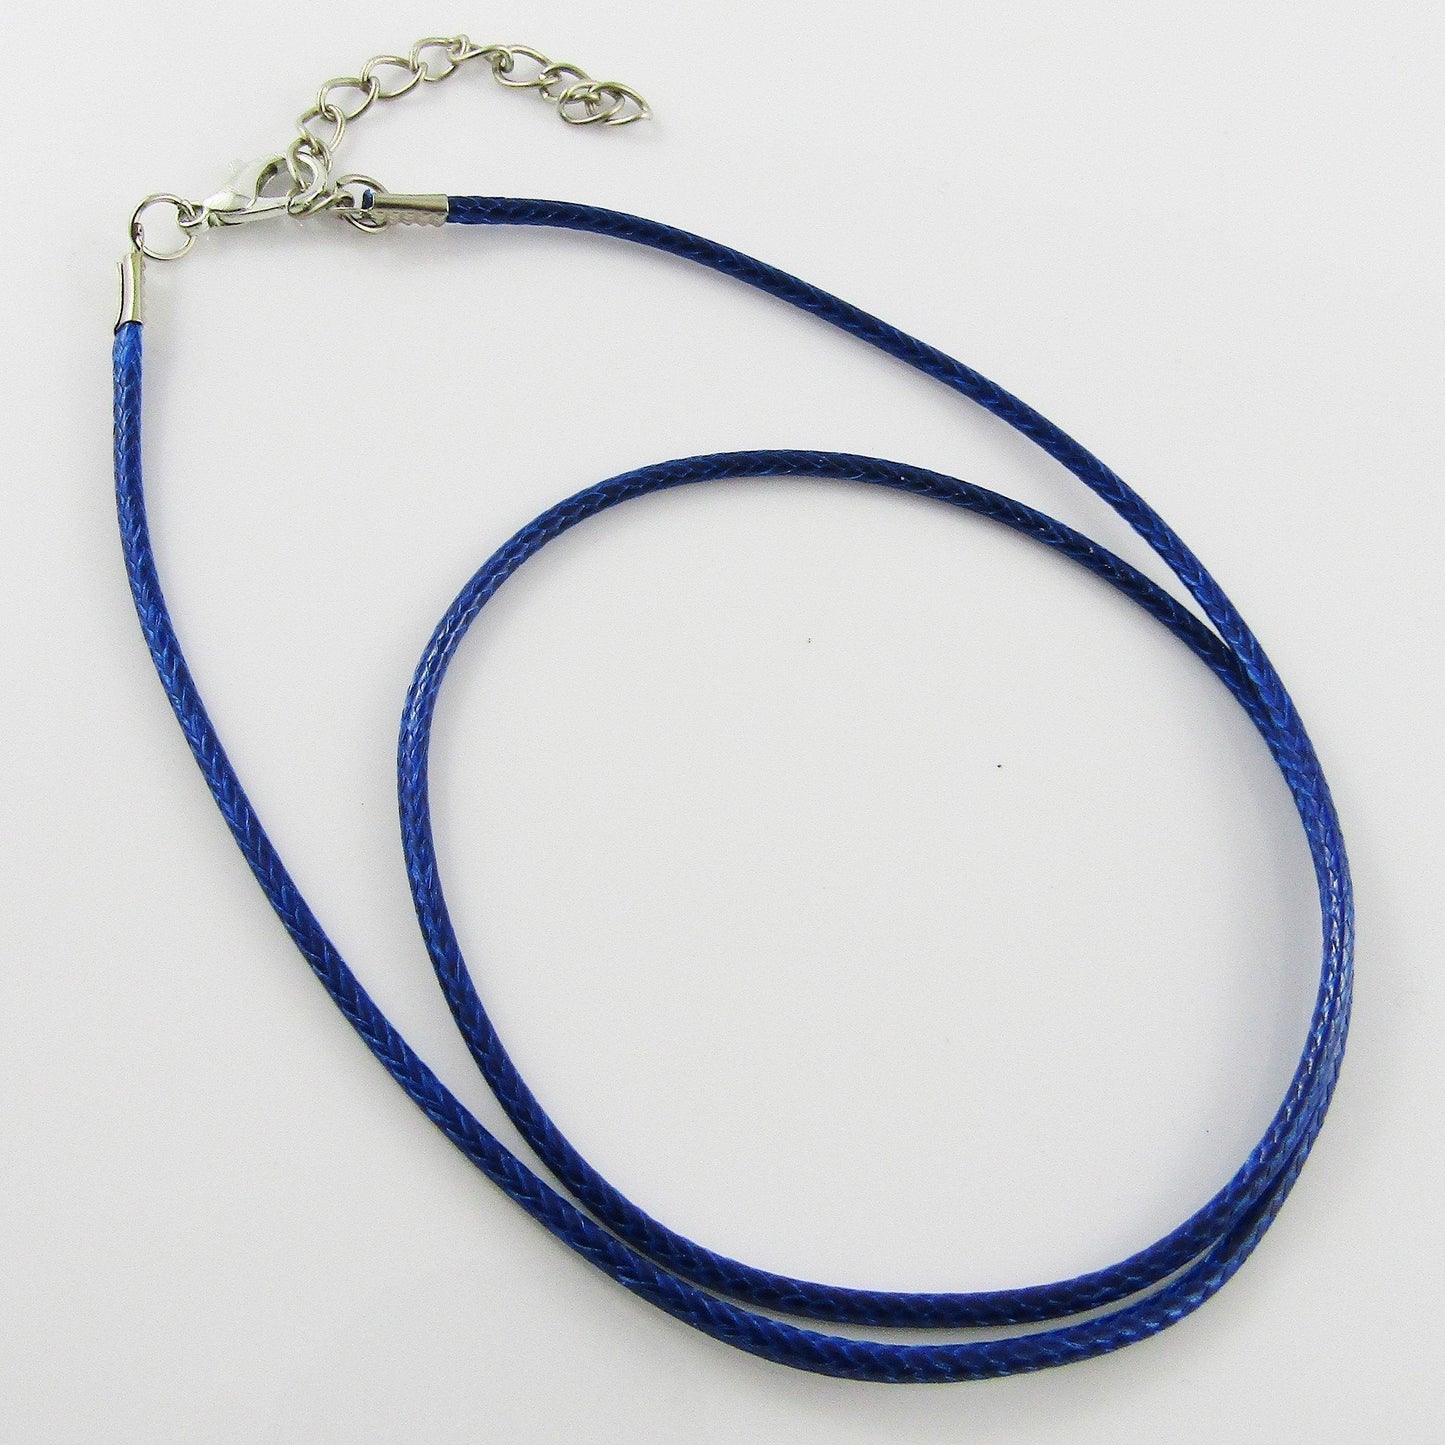 Bulk Pack 10pcs 2mm Blue Cord Necklace 44cm with 5cm Extender